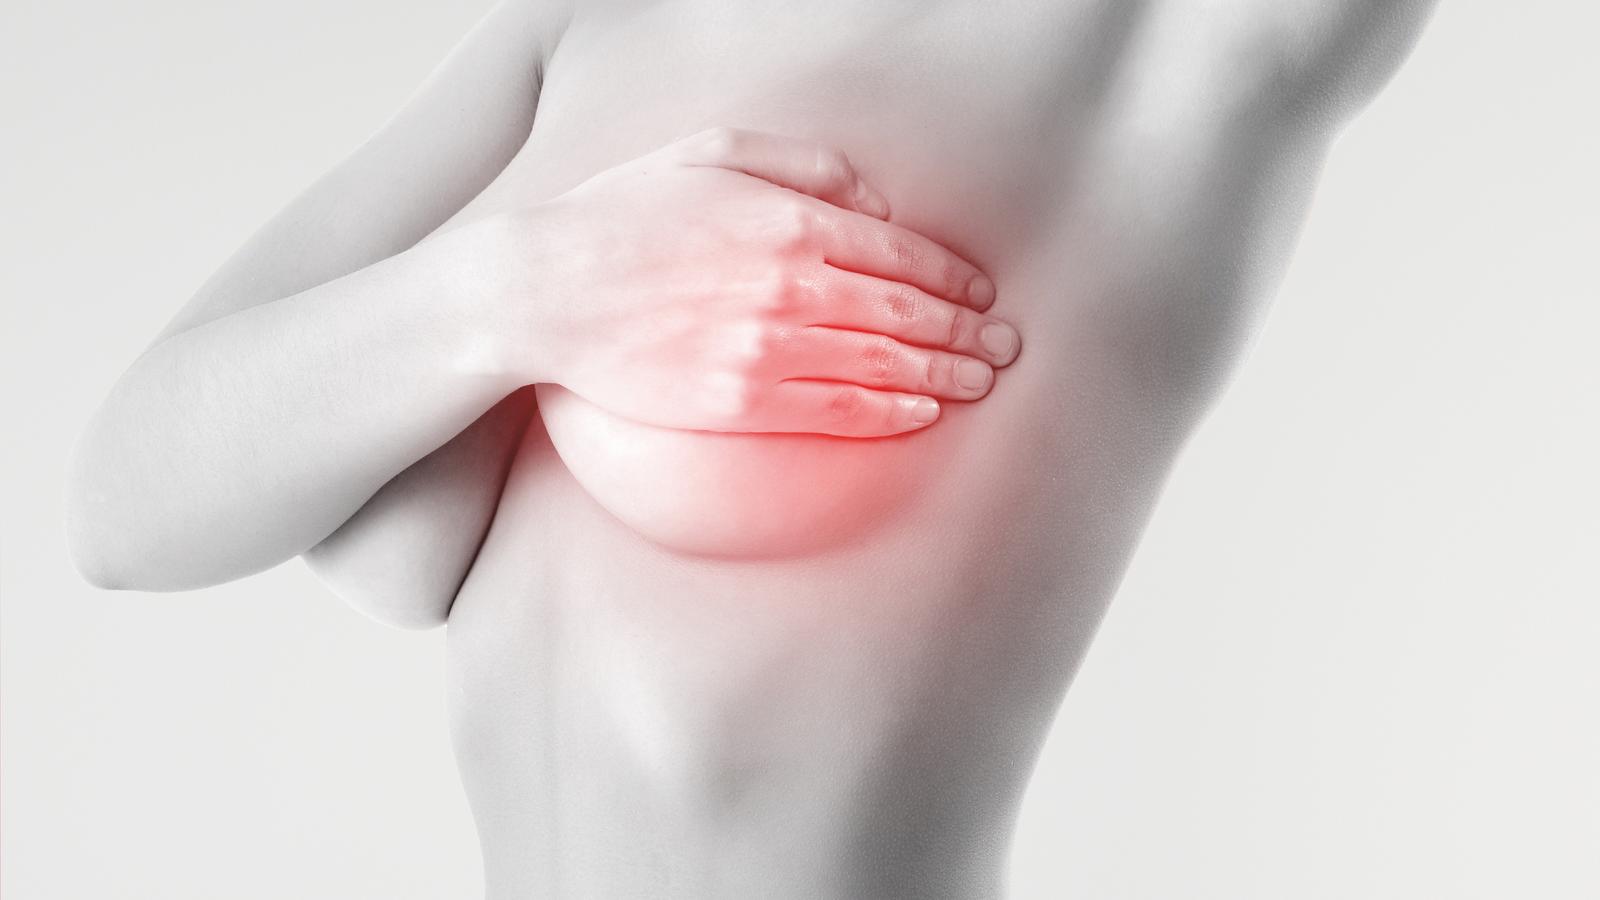 Brustkrebserkennung – neue Technologien in der Diagnose